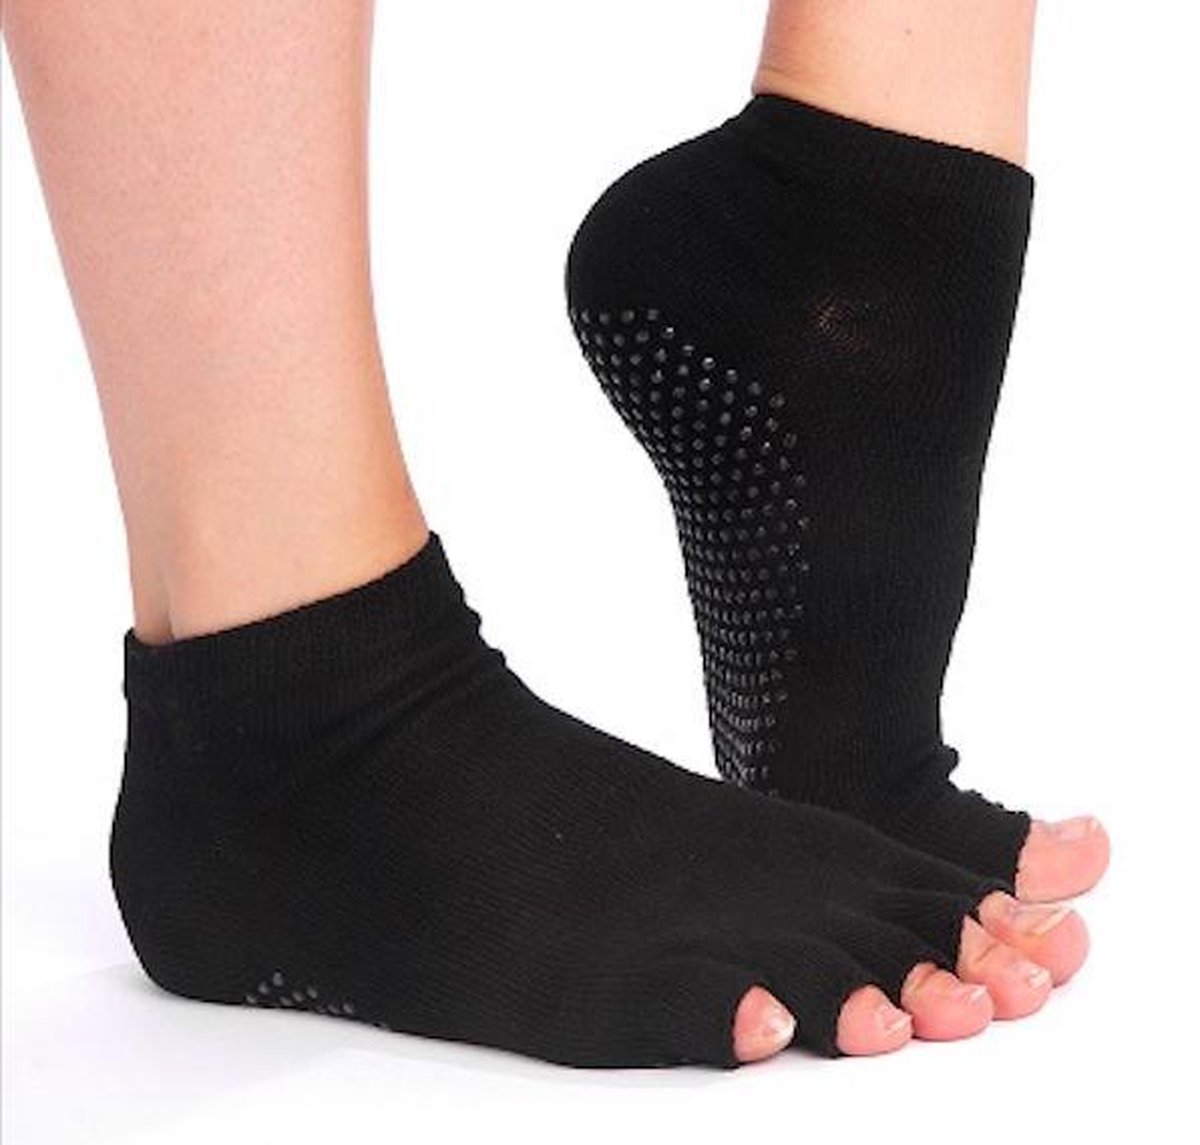 Zwarte antislip sokken 'Summer' voor Yoga, Pilates en Piloxing- meerdere kleuren verkrijgbaar- Pilateswinkel